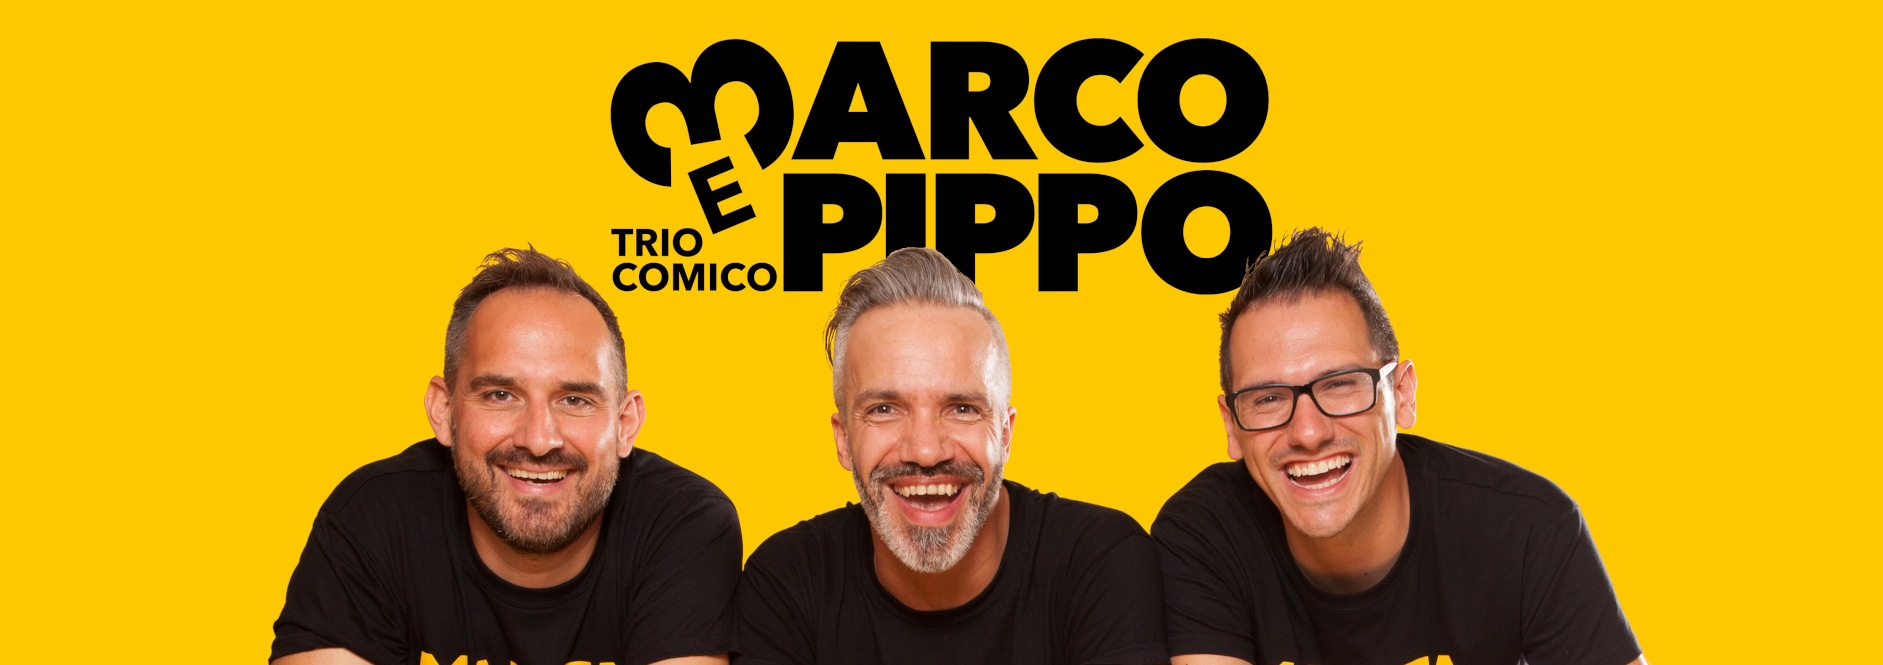 Marco e Pippo Direttamente Live: torna l’amato appuntamento social del trio comico